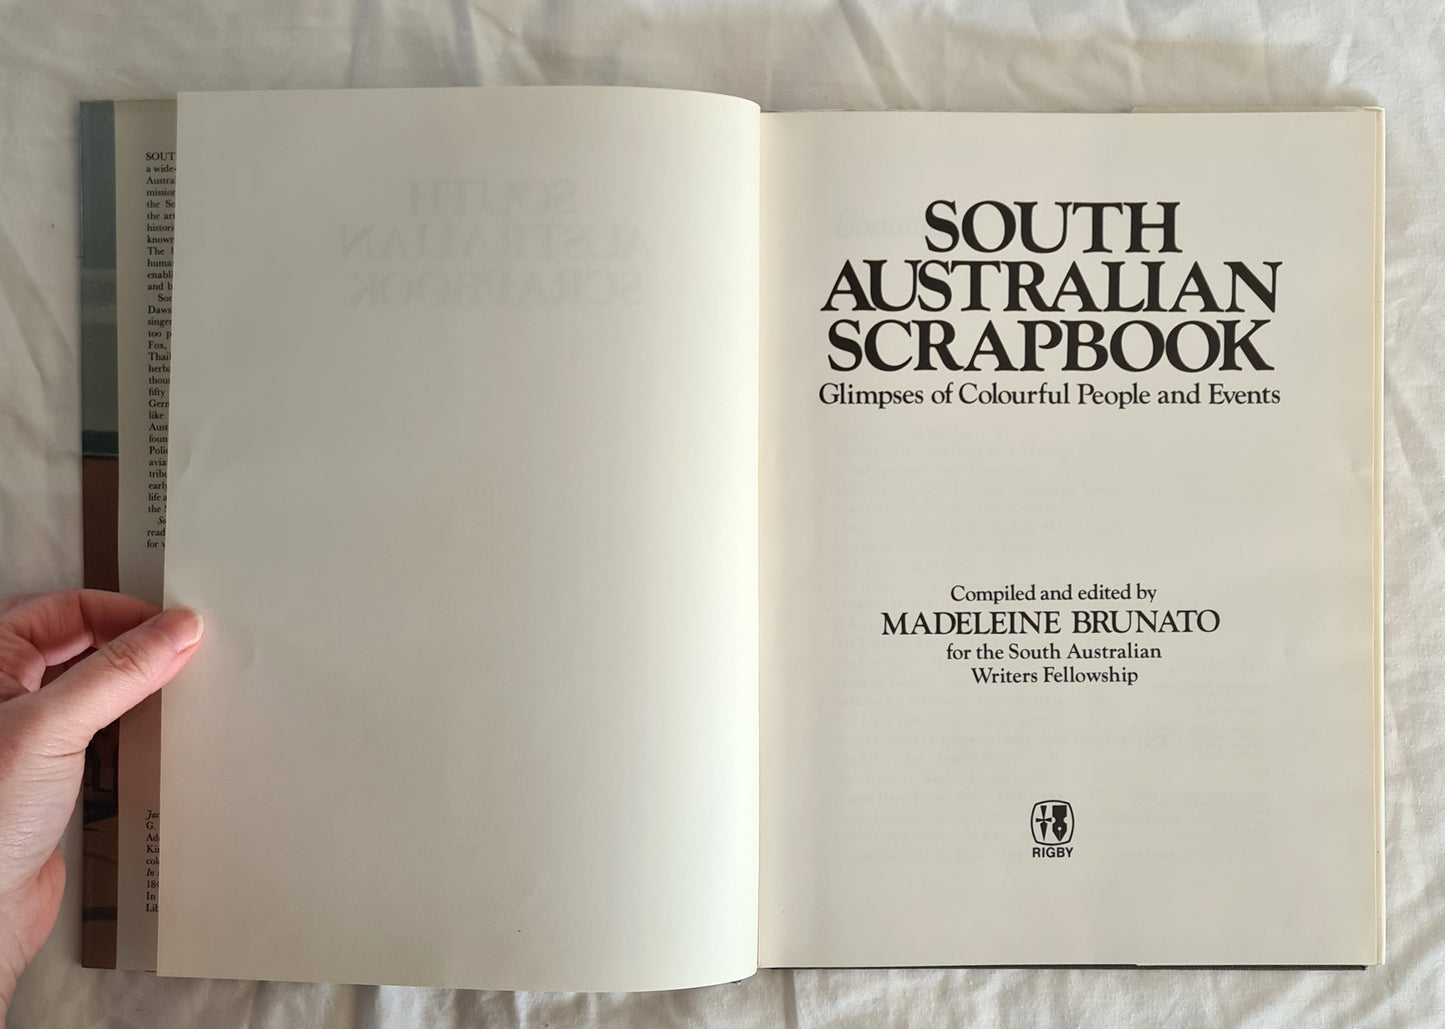 South Australian Scrapbook by Madeleine Brunato